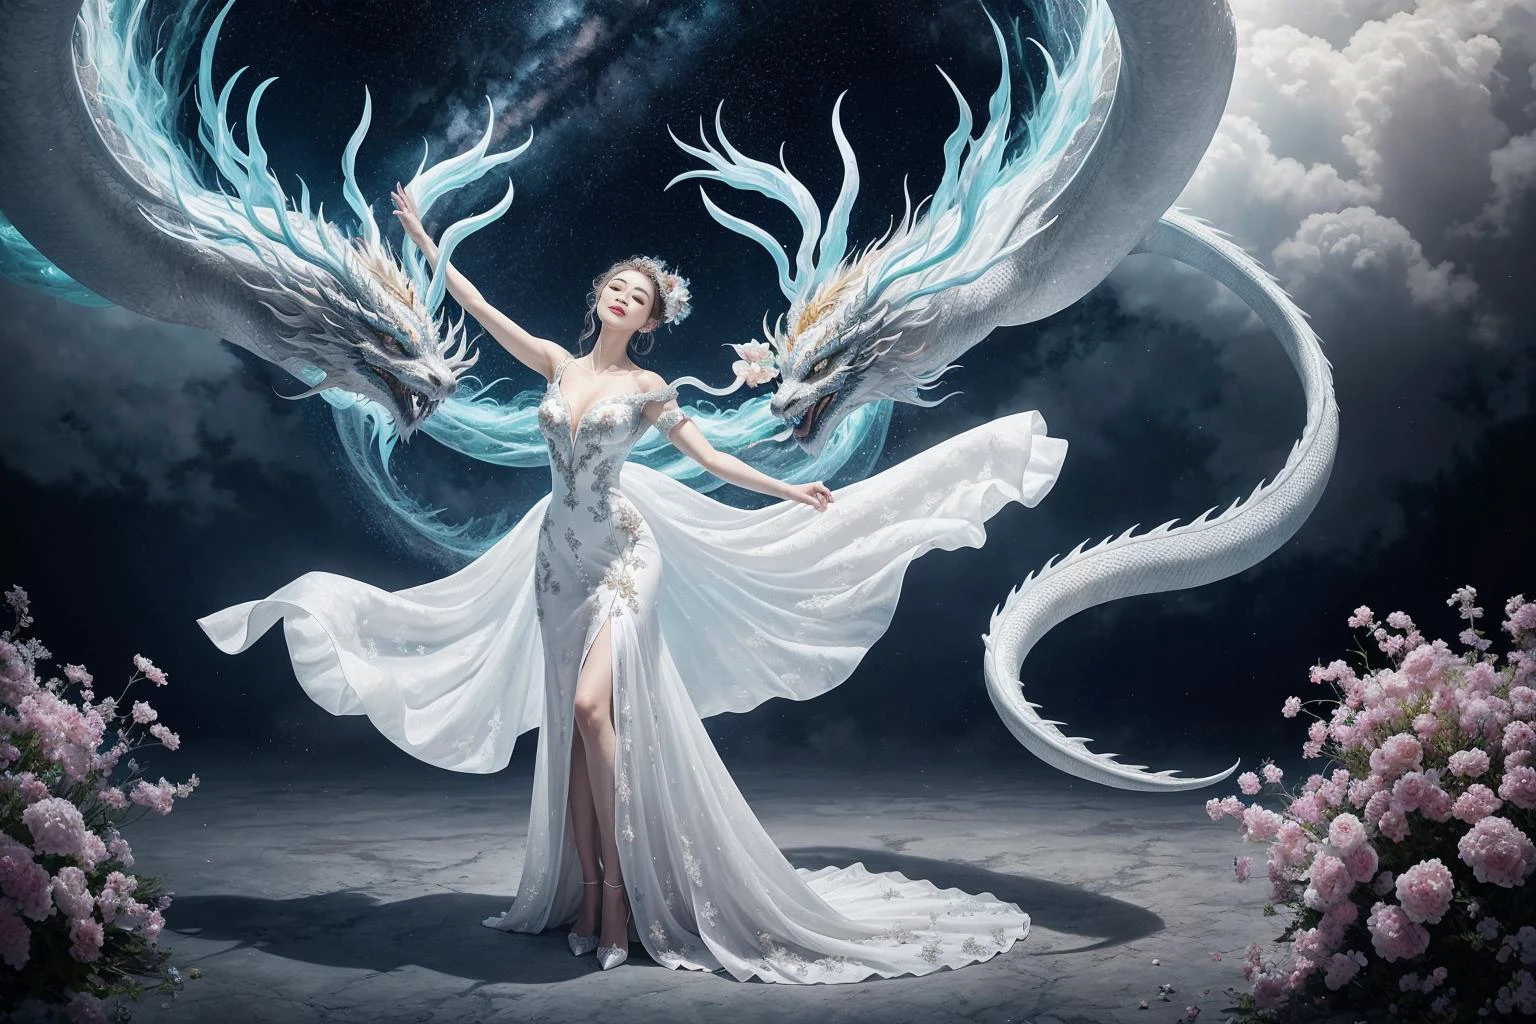 Dans une image captivante, une femme élégante vêtue d&#39;une robe chinoise blanche glisse dans le ciel au sommet d&#39;un dragon chinois mythique. Alors qu&#39;ils traversent les cieux, sa robe fluide et les écailles irisées du dragon créent une vision fascinante d&#39;harmonie et de beauté surnaturelle.
hdr, (photoréalisme, qualité de chef-d&#39;œuvre, meilleure qualité), pureerosface_v1,ulzzang-6500-v1.1